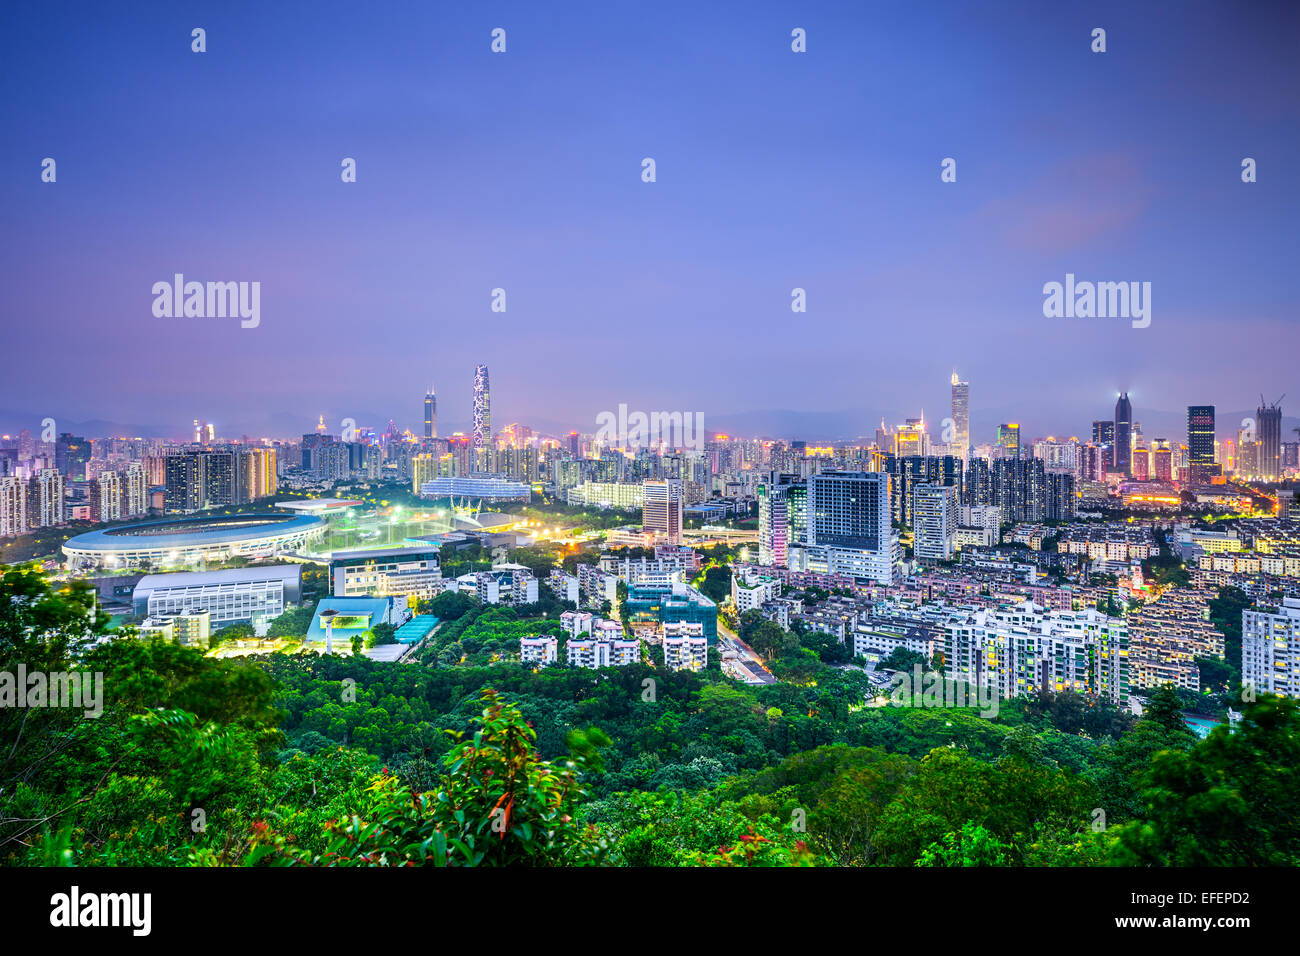 Shenzhen, China downtown cityscape. Stock Photo